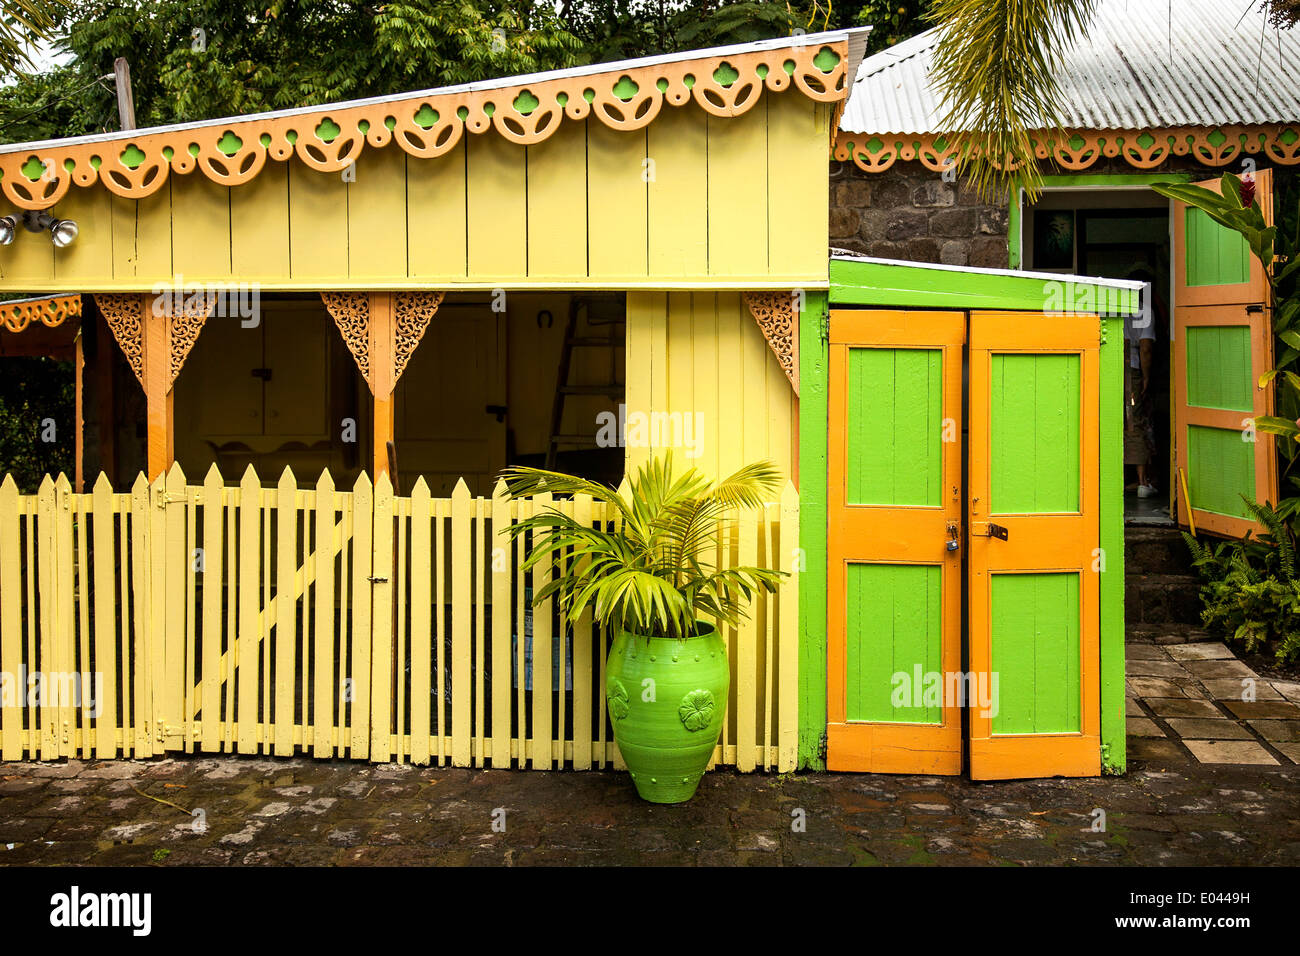 Carino, Batik studio e negozio di vendita popolare sull'isola. Foto Stock